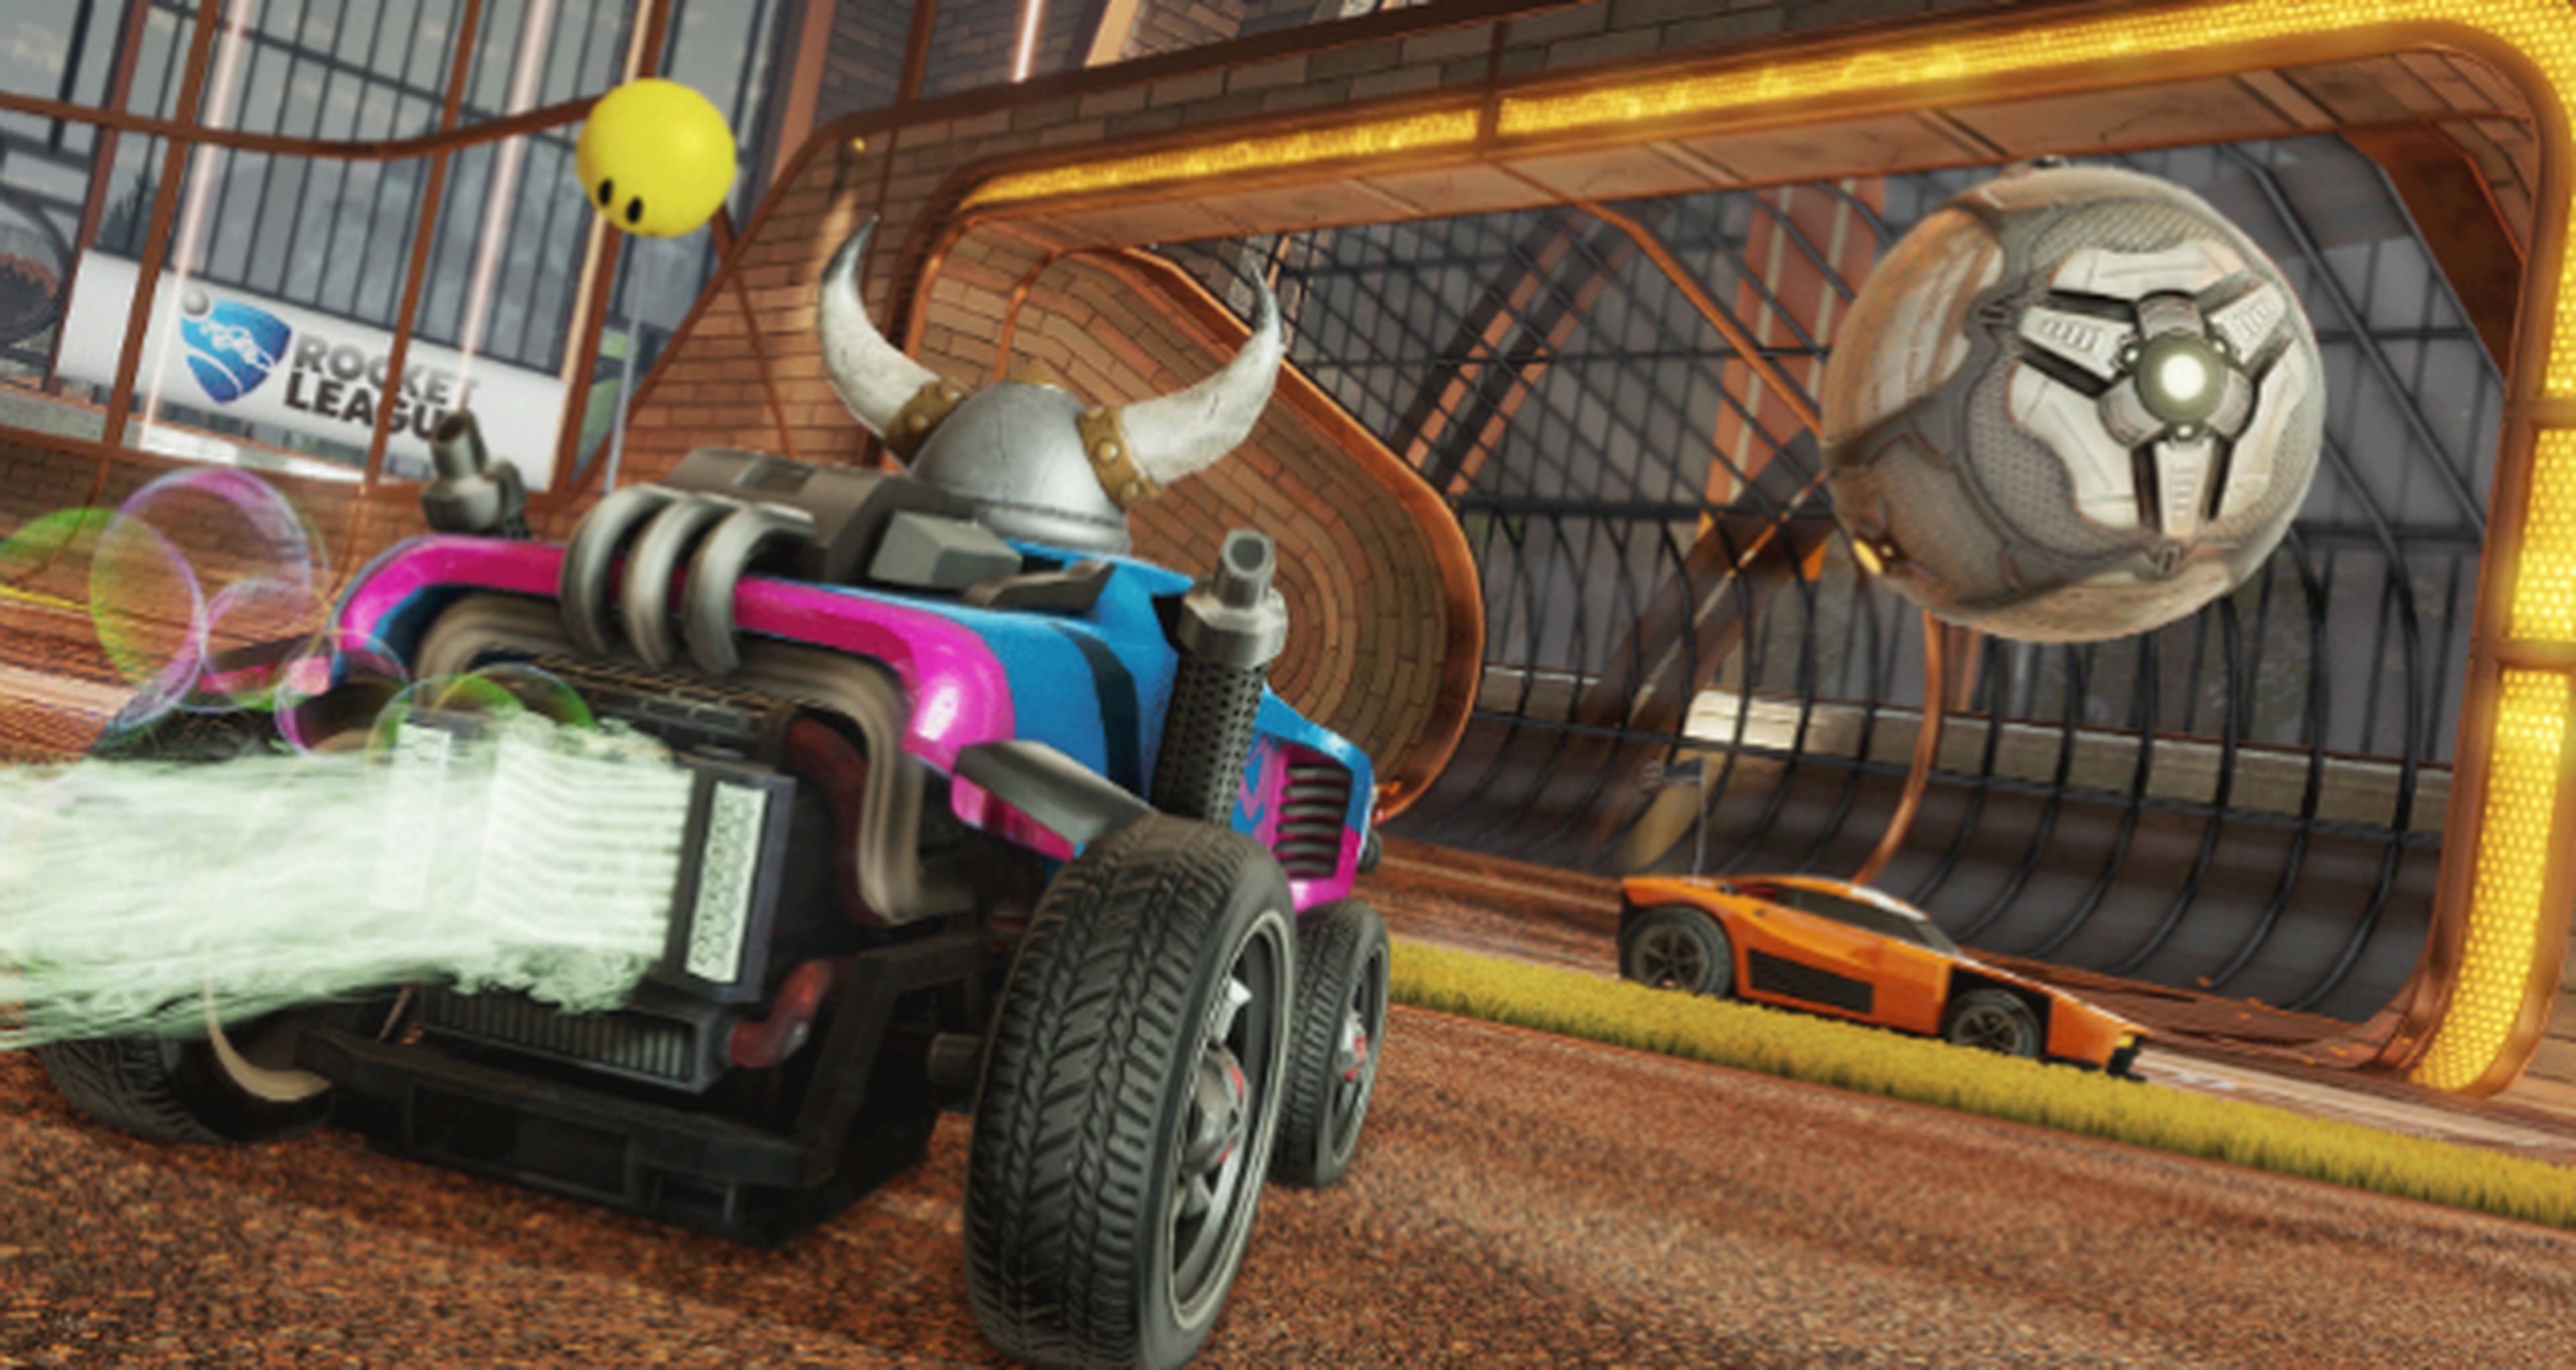 Rocket League tendrá edición en formato físico en PS4 y Xbox One